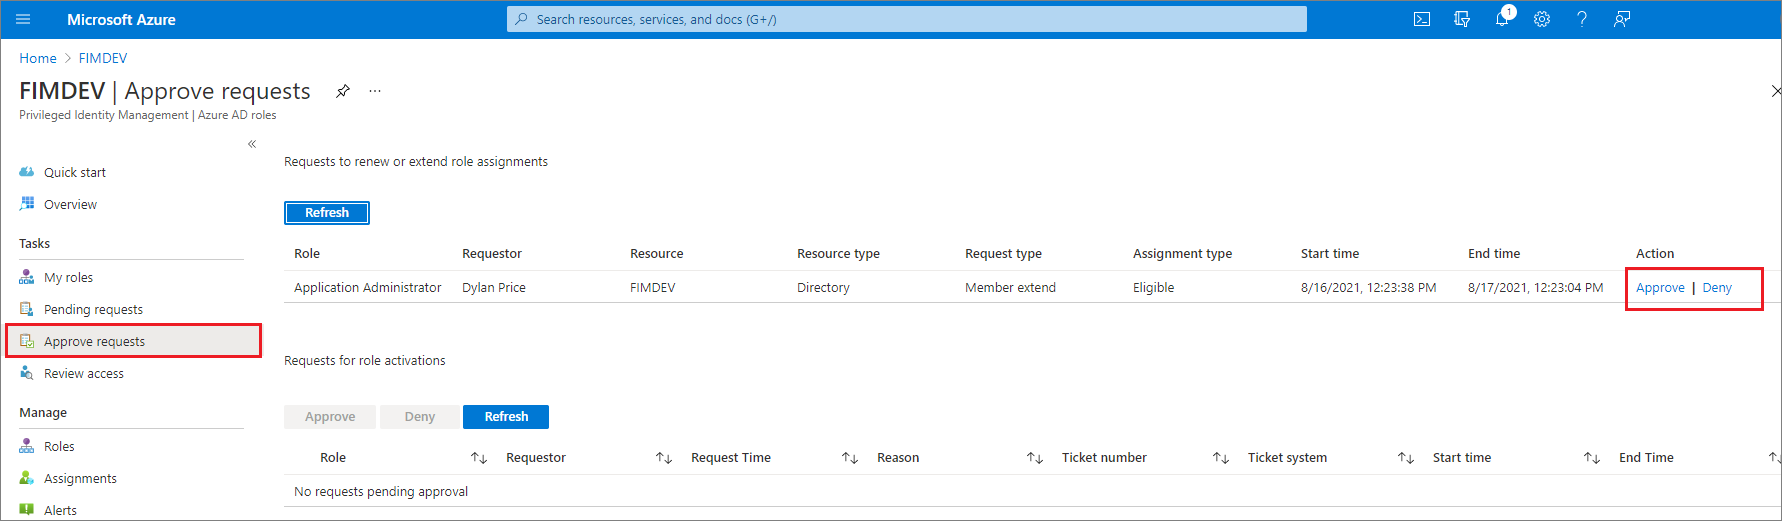 Captura de tela mostrando funções do Microsoft Entra - página Aprovar solicitações, listando solicitações e links para aprovar ou negar.